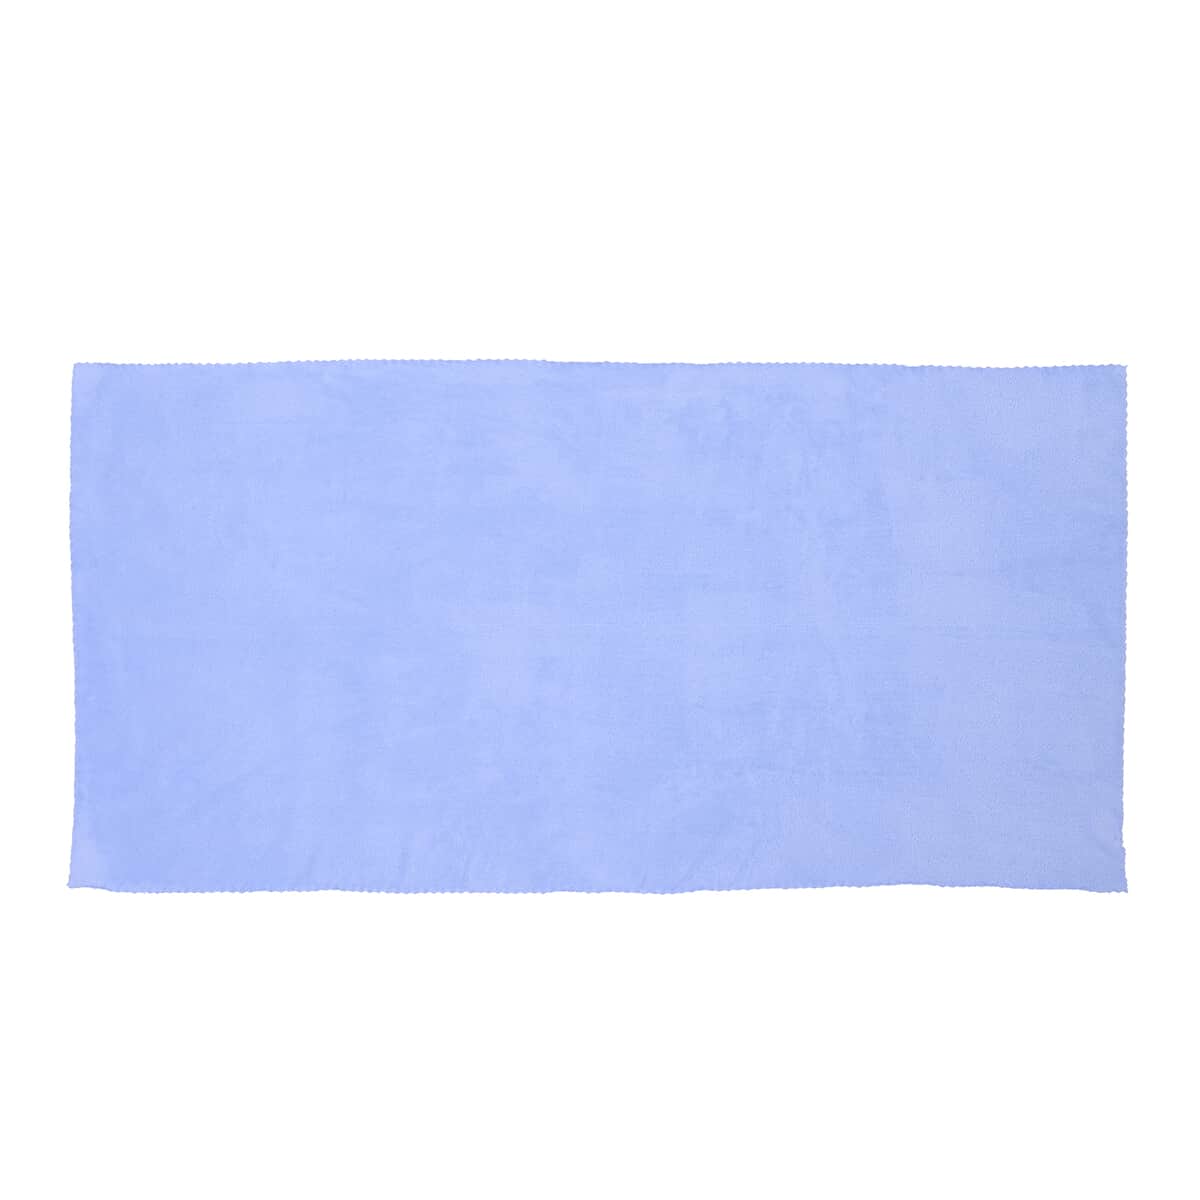 HOMESMART Set of 2 Blue Solid Color Microfiber Bath Towel (12'x29') image number 1